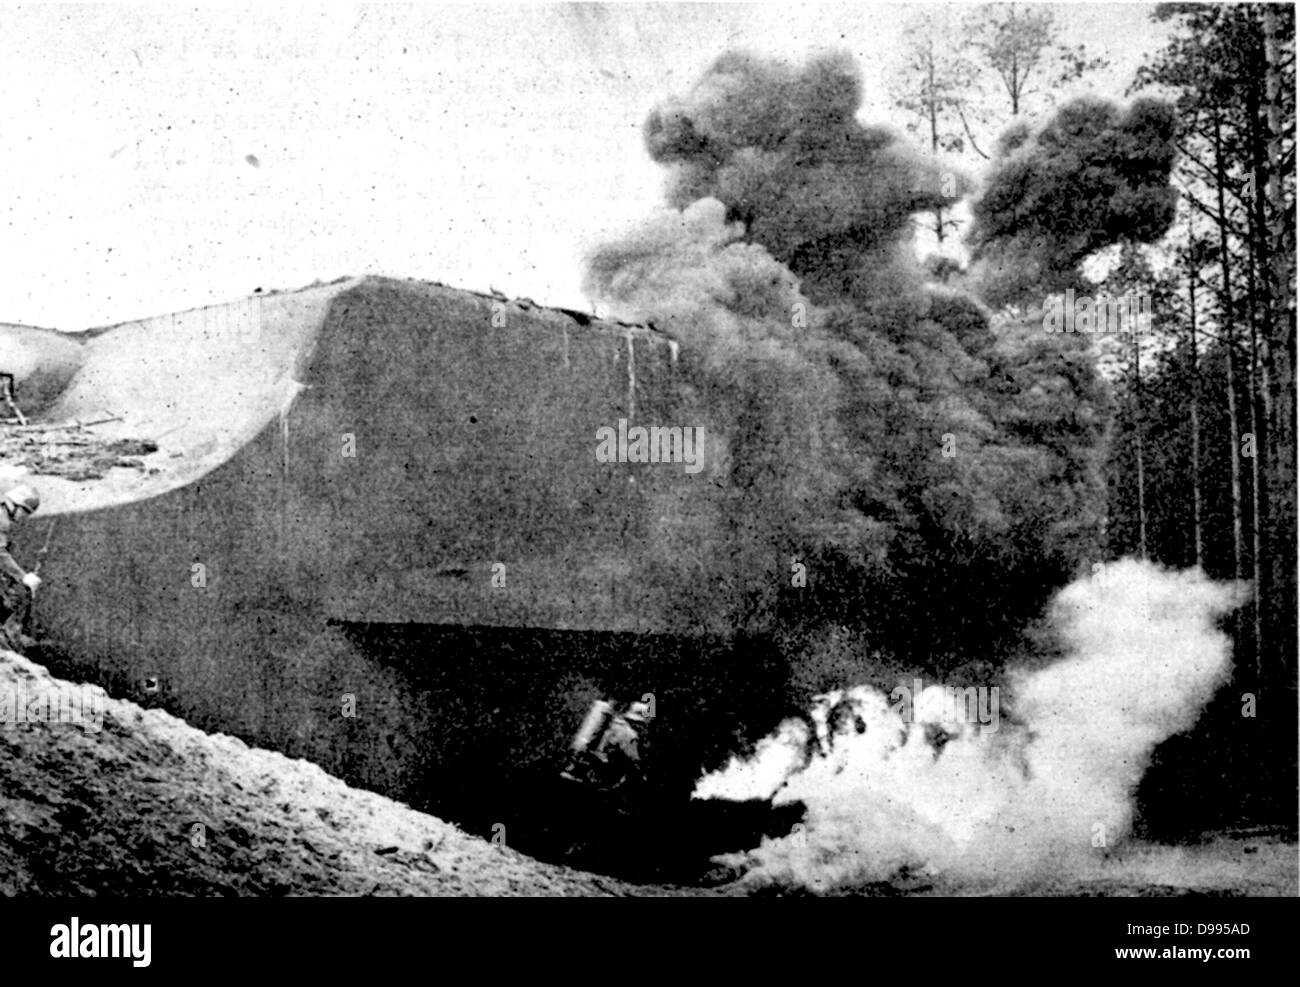 II Guerra Mondiale: nazista (tedesco) dimostrazione di come difensivo francese linea Maginot fortezze furono distrutte da un attacco con lanciafiamme e granate. In alcuni luoghi le difese di Maginot mantenuta per un certo periodo di tempo. Foto Stock